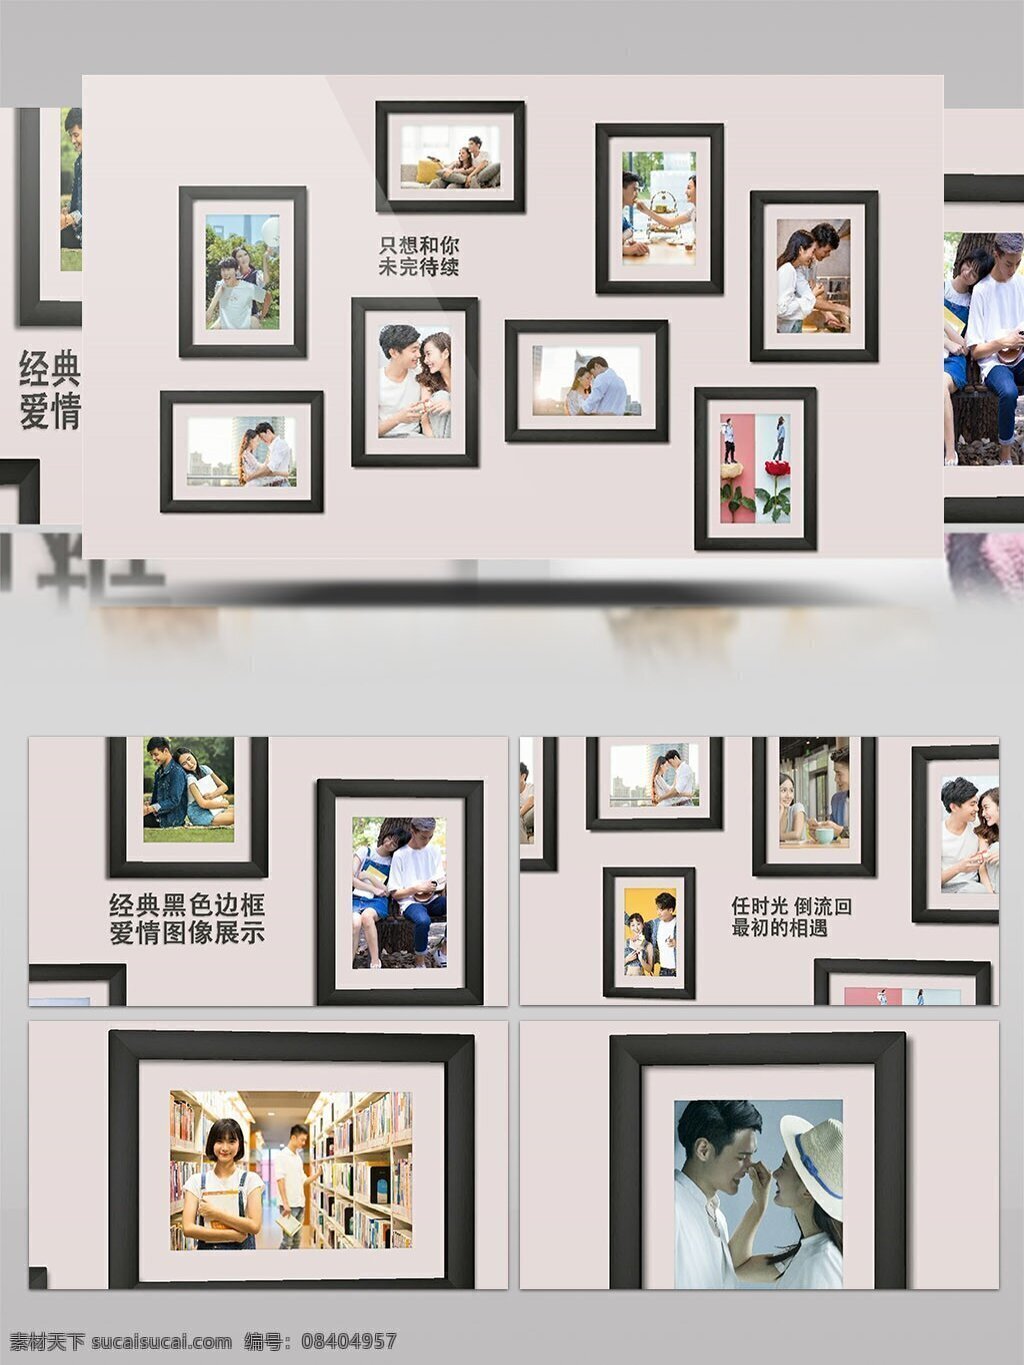 优雅 黑色 边框 婚礼 照片 展示 开场 ae 模板 照片墙 相框 相册 生日 图片墙 艺术 画廊 展览 简洁 干净 回忆